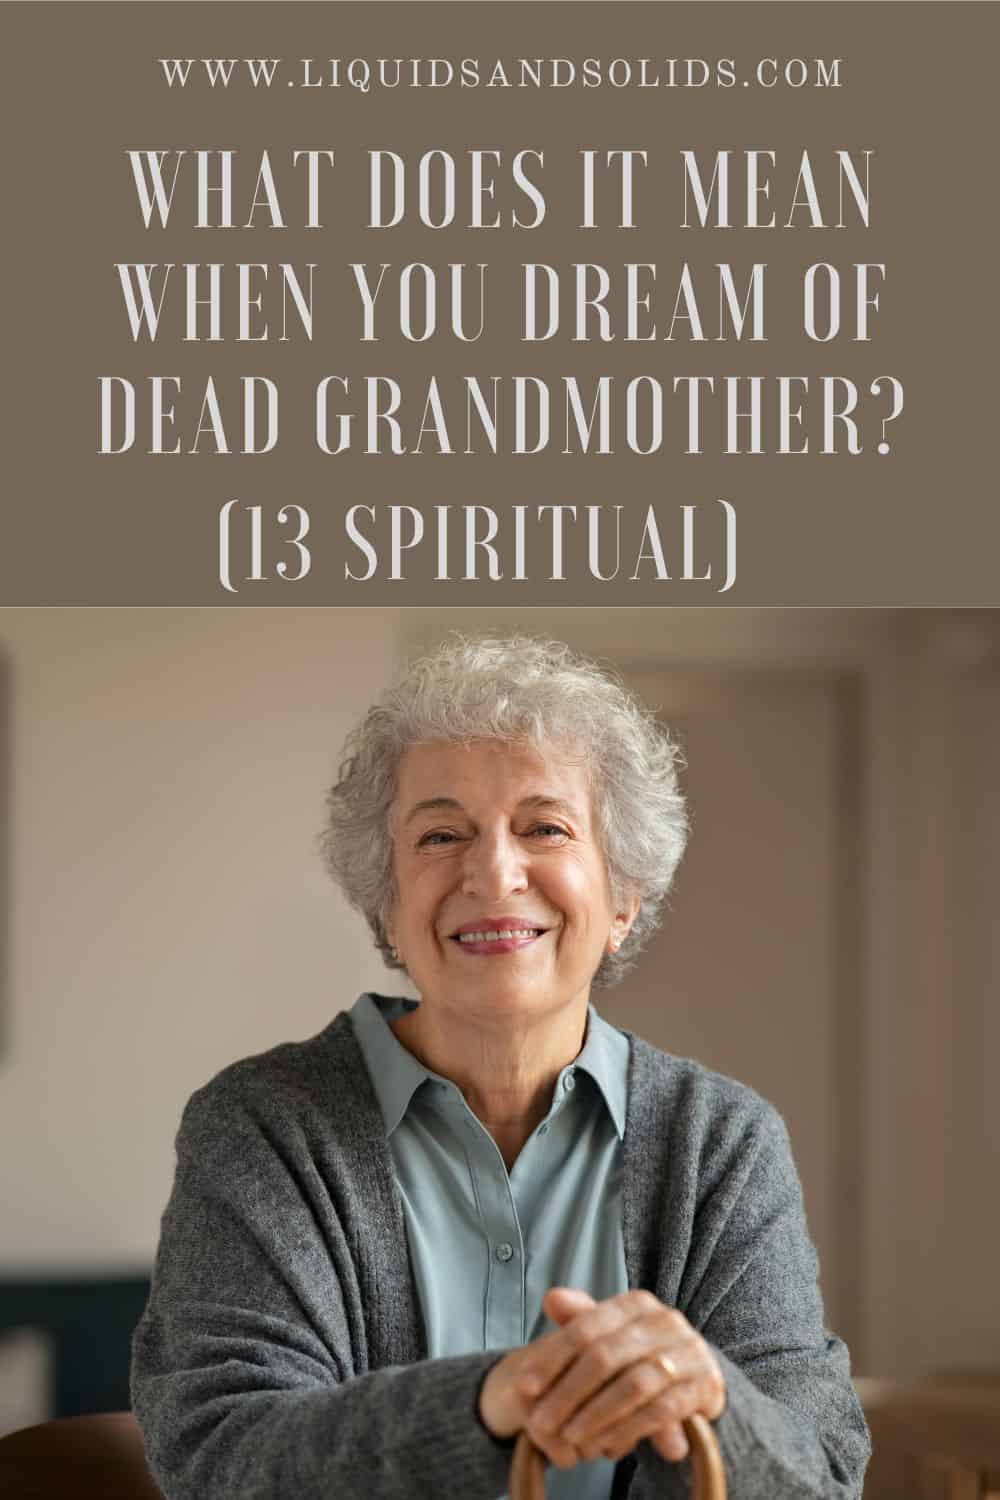  Álom a halott nagymamáról? (13 spirituális jelentés)